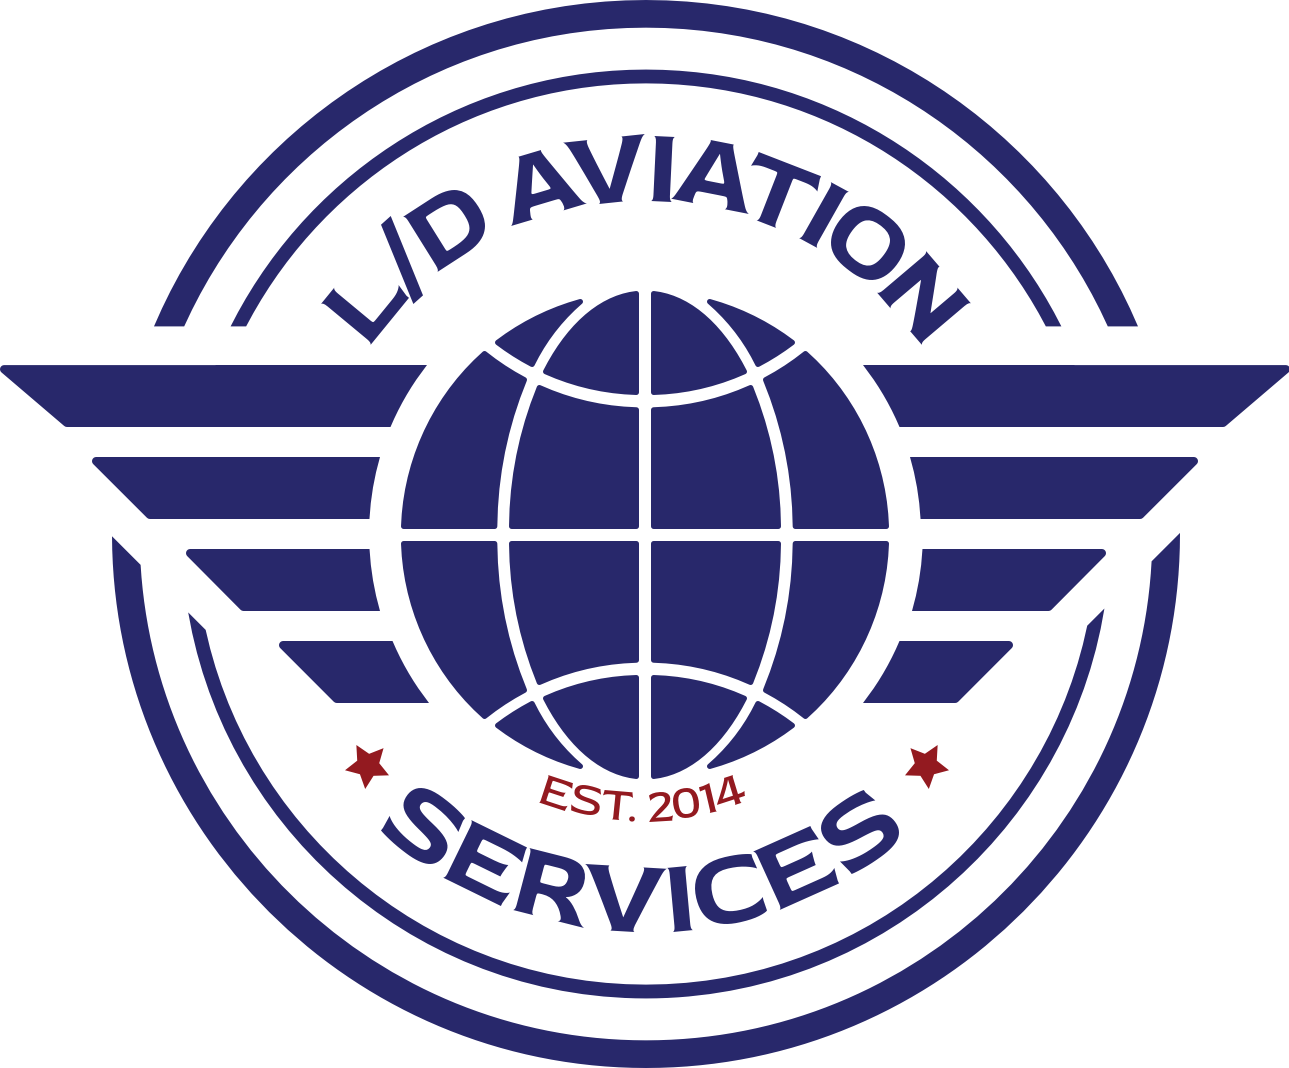 LD Aviation